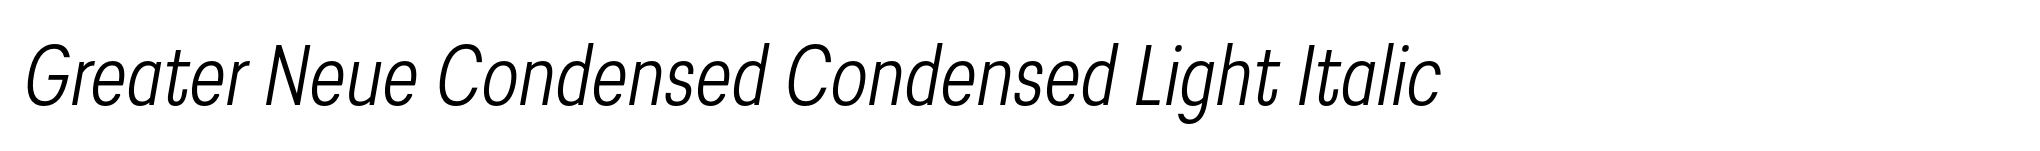 Greater Neue Condensed Condensed Light Italic image